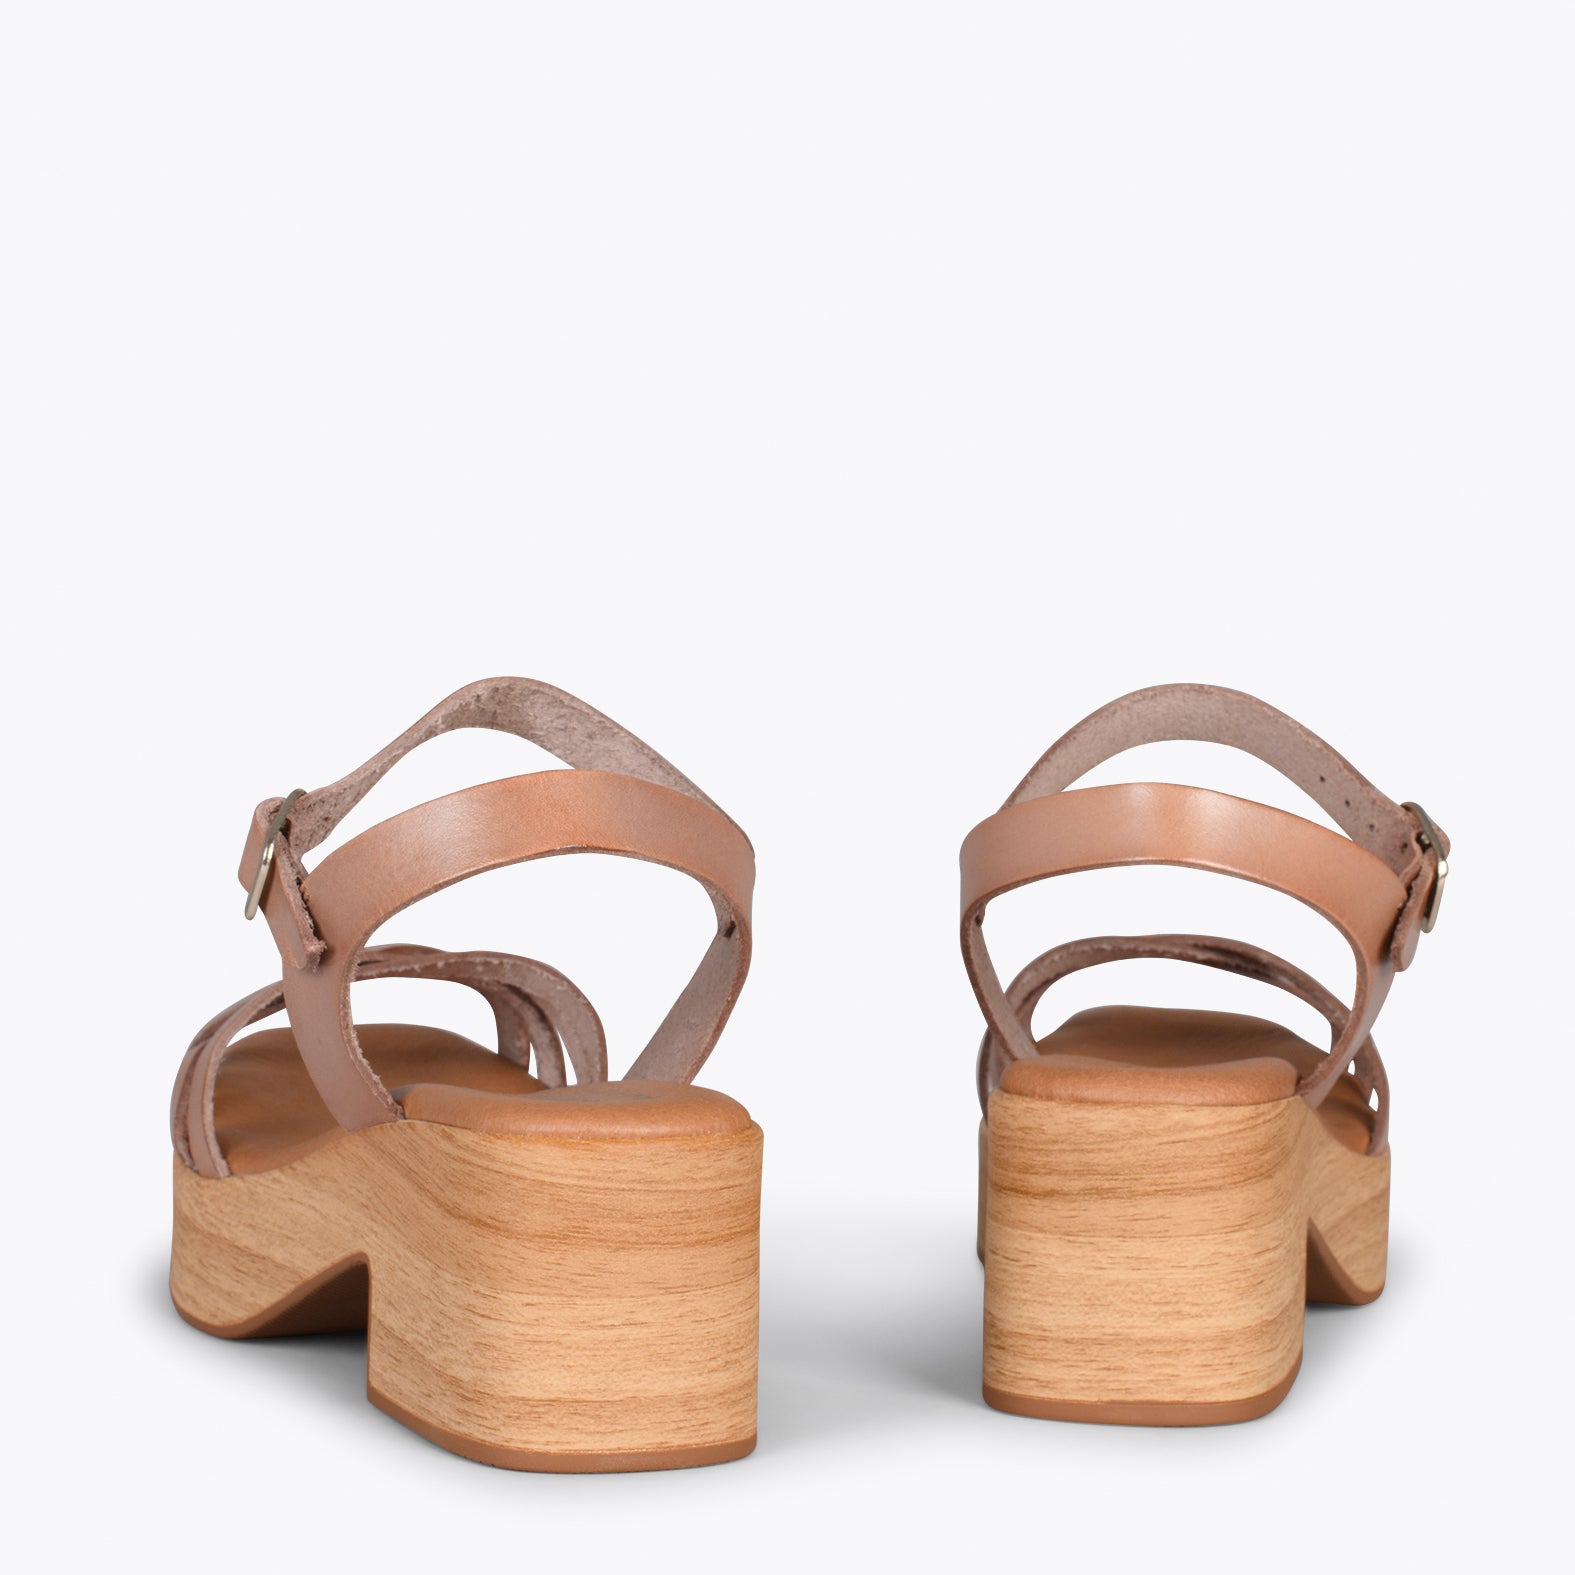 WOOD – Sandalias imitación madera con tiras TAUPE